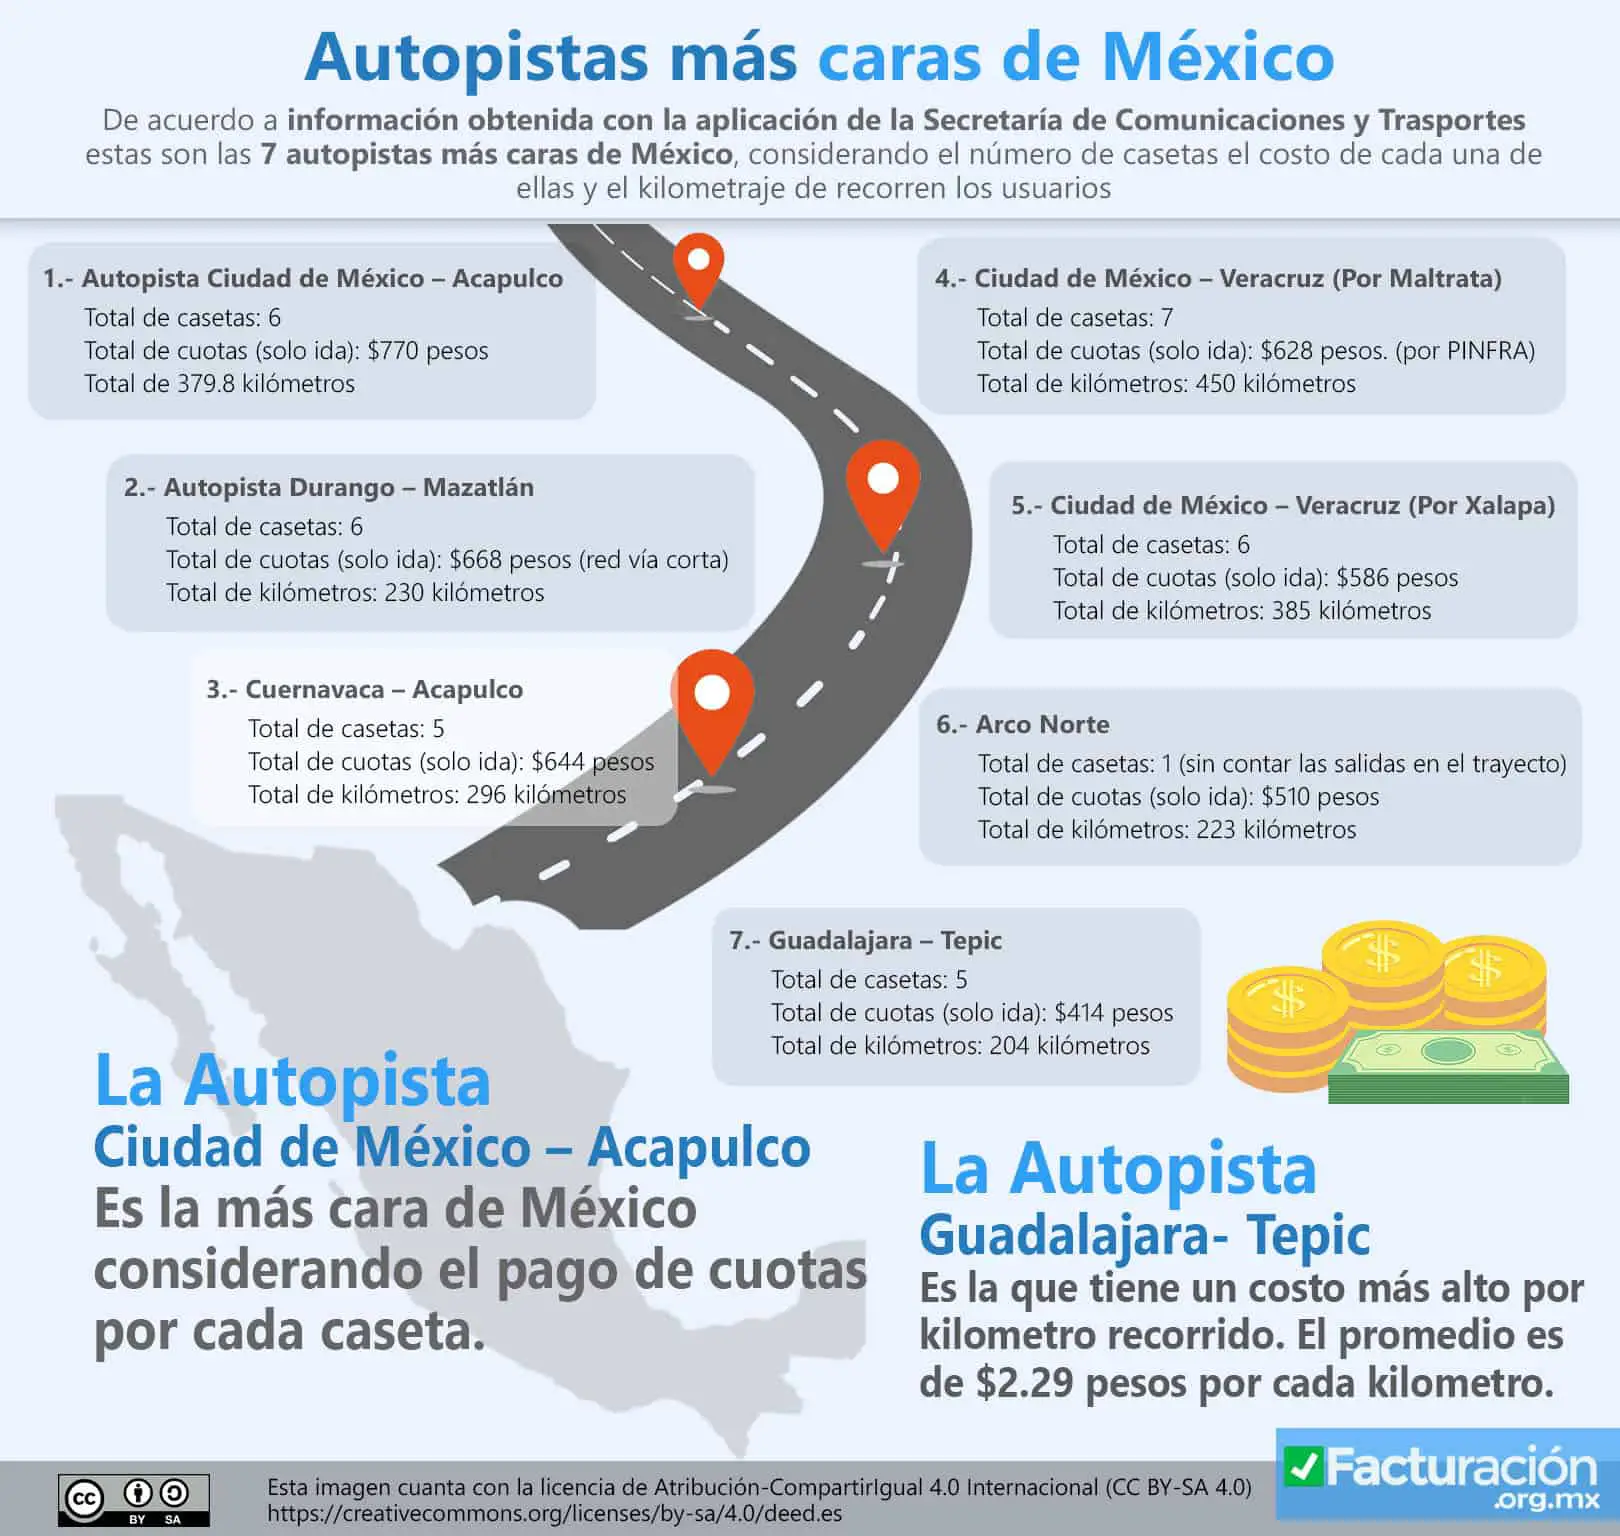 Autopistas y casetas más caras de México